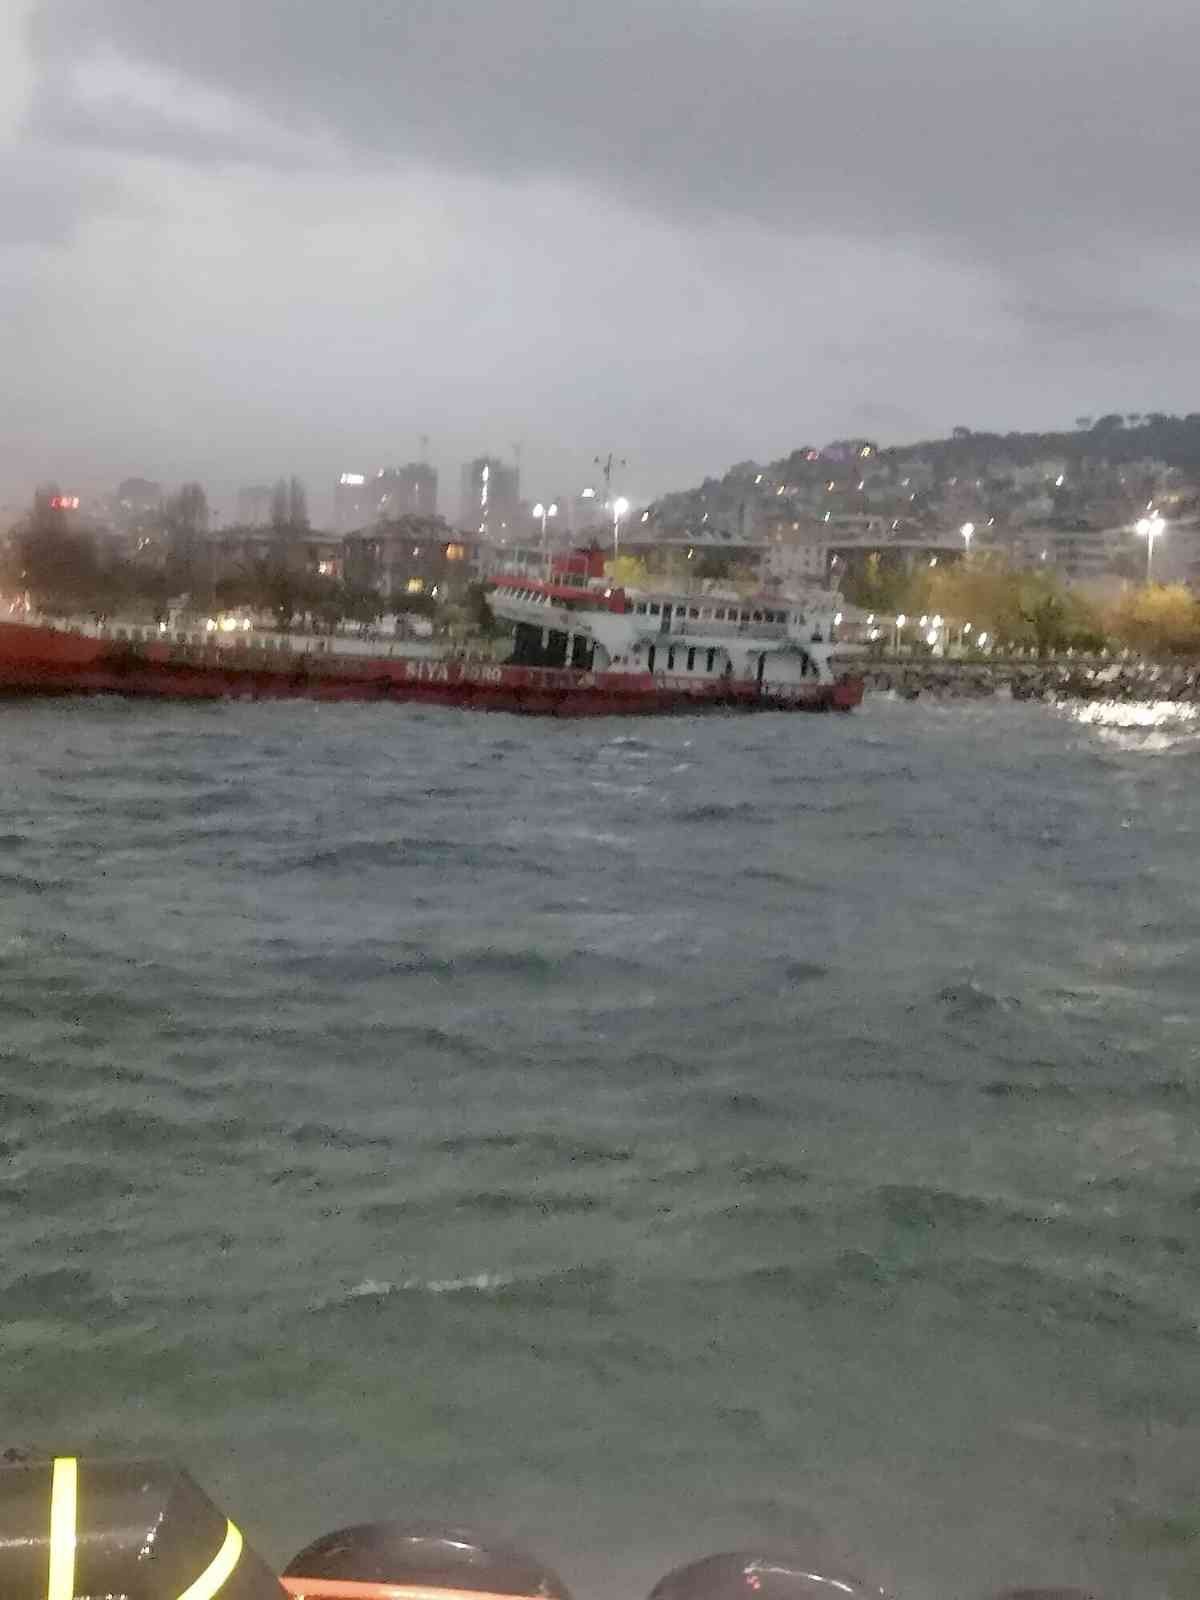 Maltepe’de lodos nedeniyle gemi karaya oturdu #istanbul